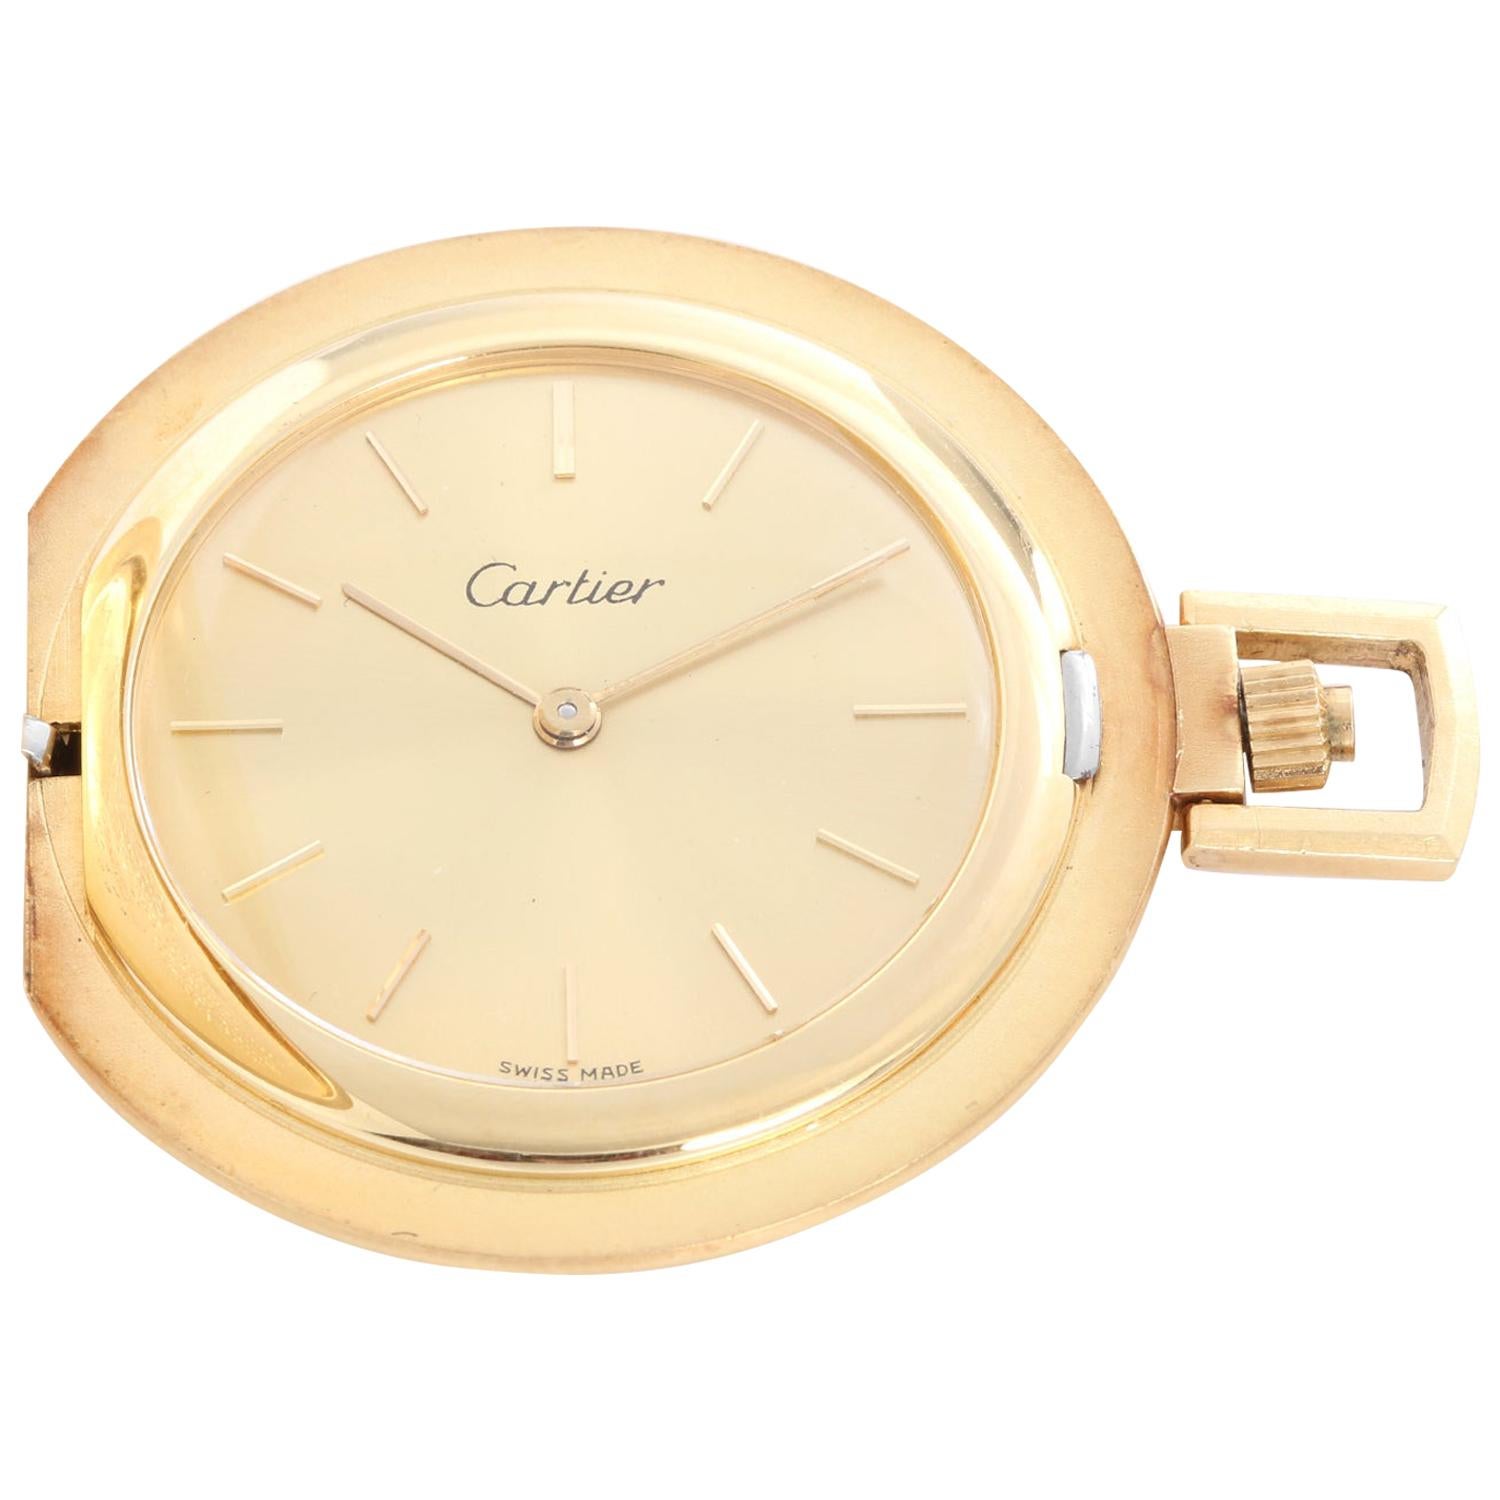 Cartier 18 Karat Yellow Gold Pocket Watch